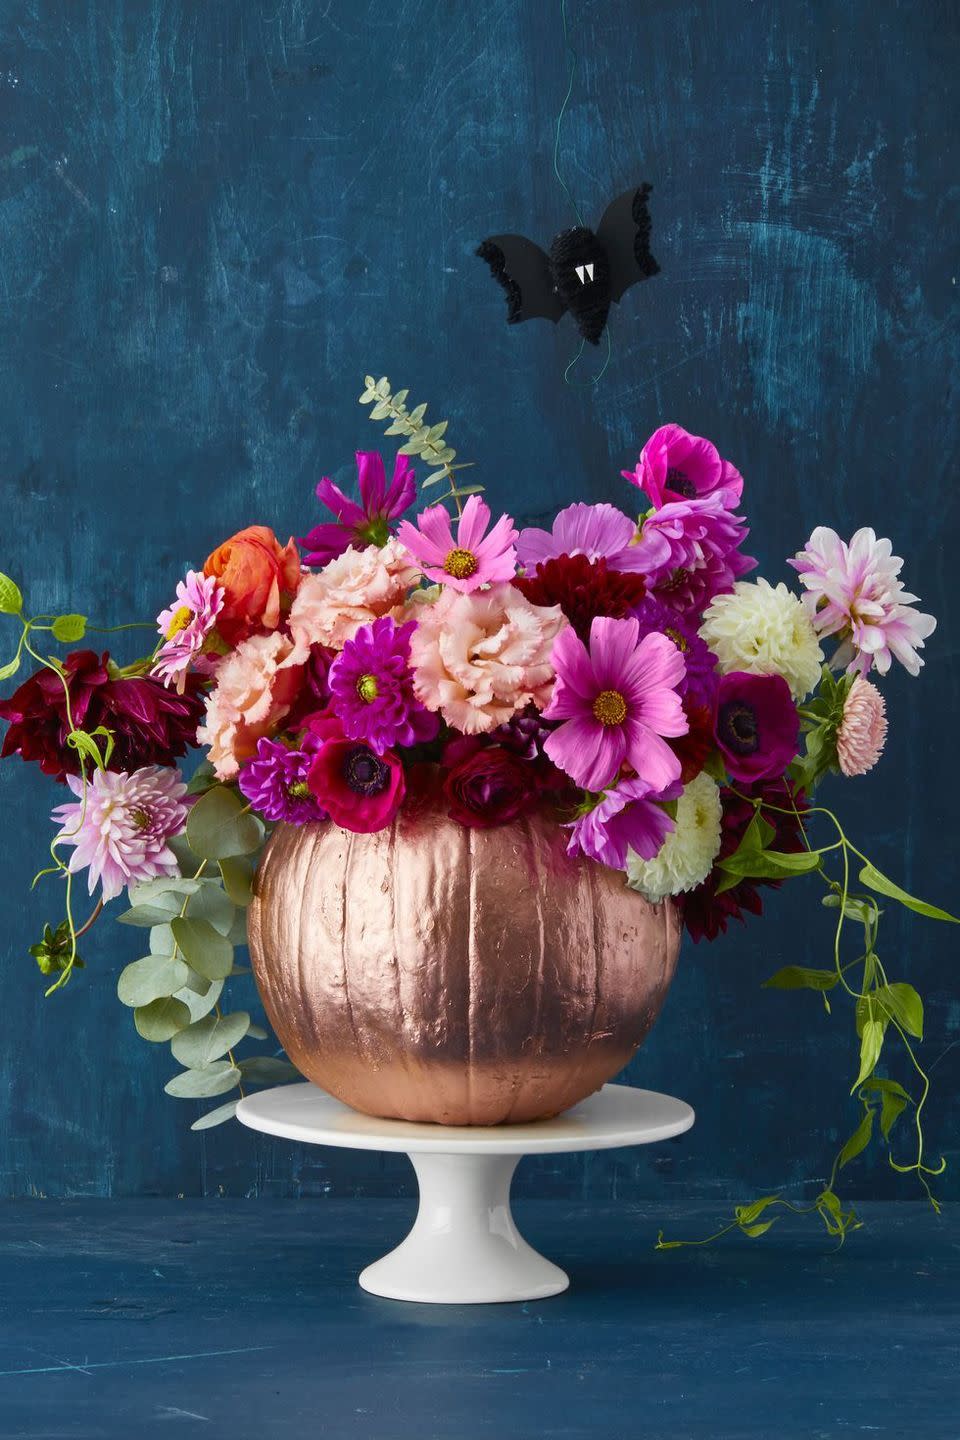 DIY a Fall Floral Arrangement